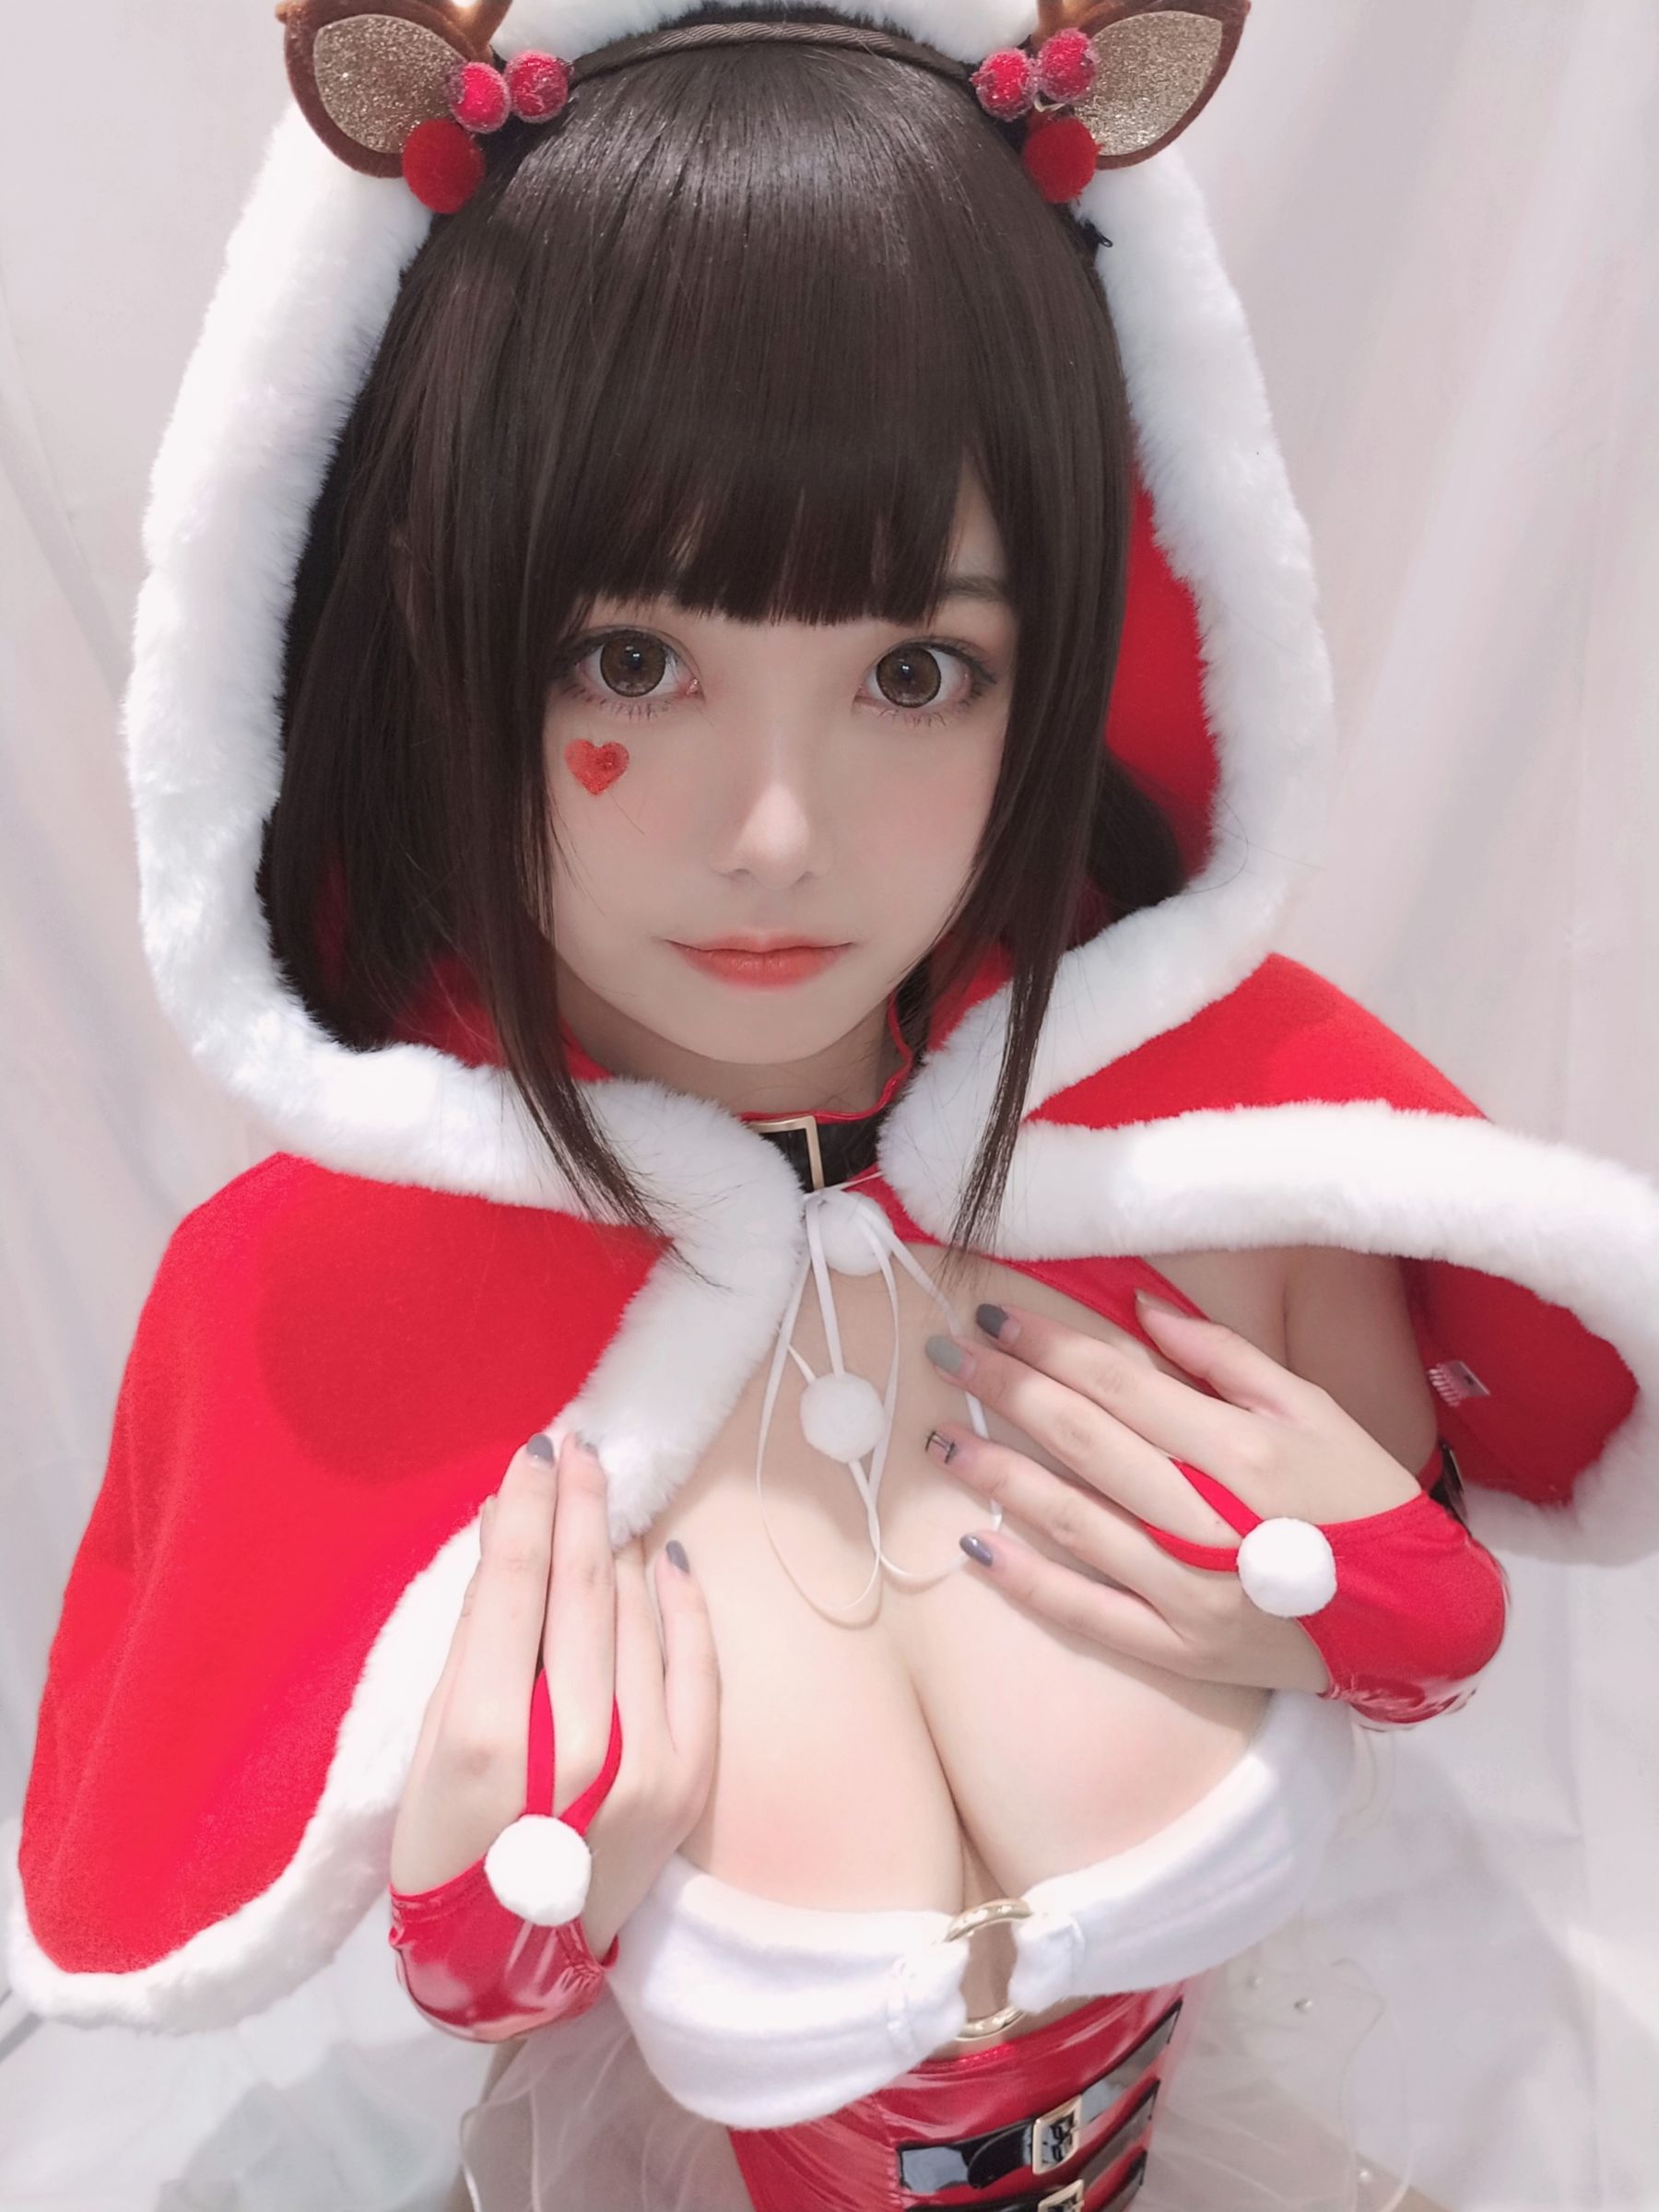 [Cosplay写真] 萌系小姐姐蜜汁猫裘 - 圣诞自拍/(36P)